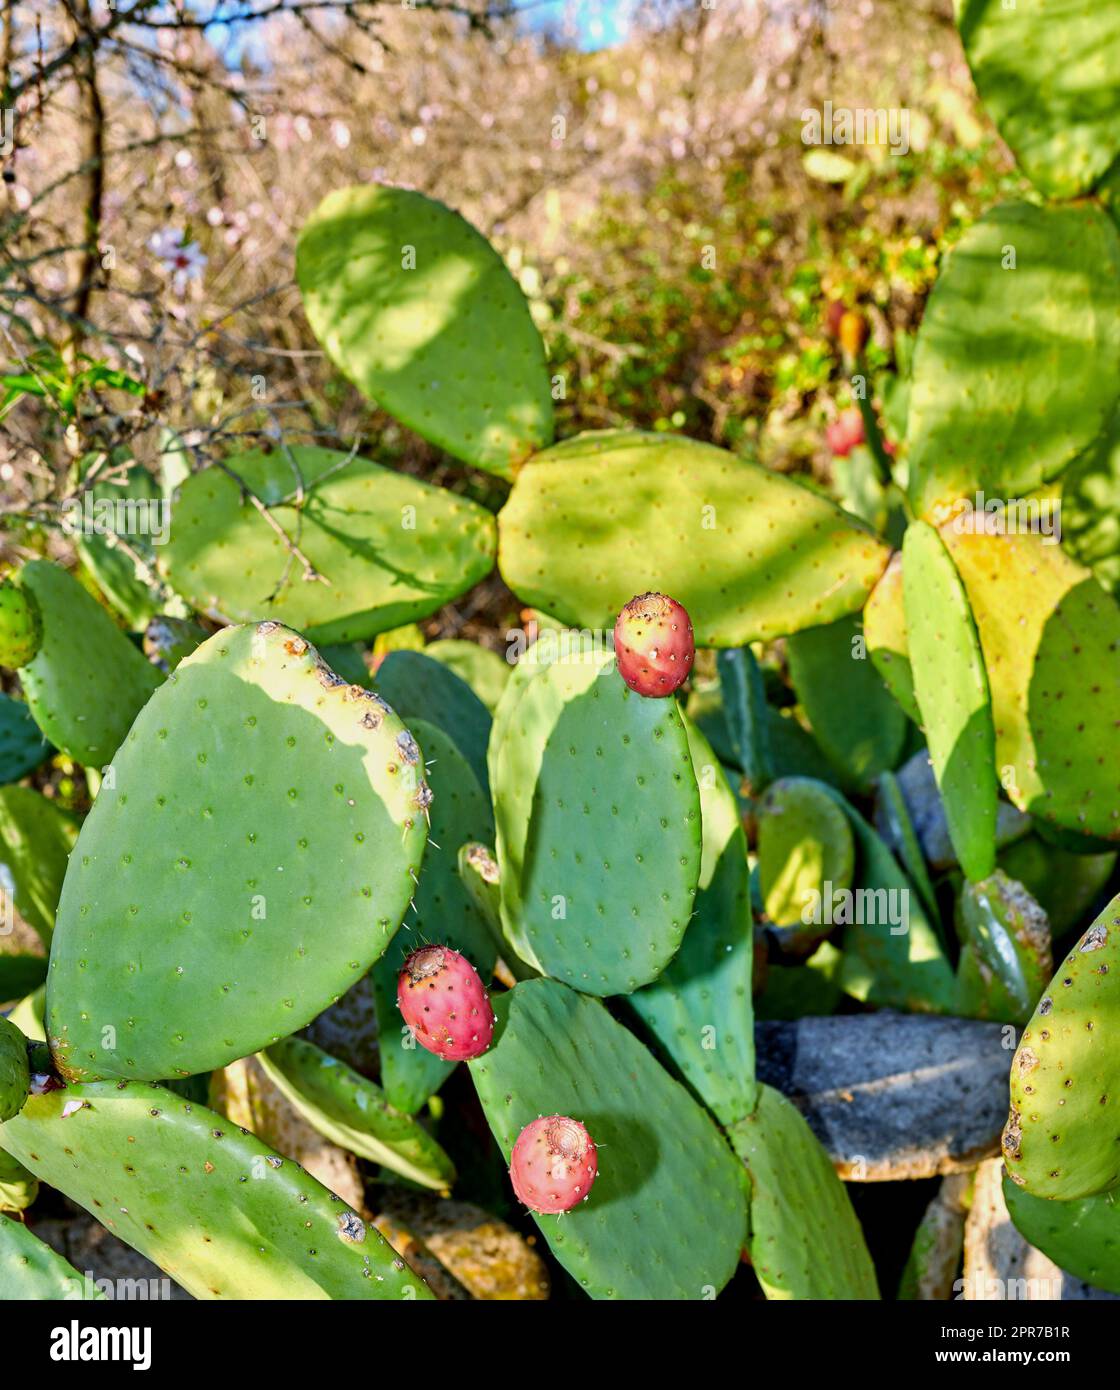 Schließung von Kaktusfrüchten mit Stachelbirne, die auf einer grünen Kaktuspflanze wachsen, die auf den Kanarischen Inseln, Spanien, angebaut wird. Exotische Pflanzen, die an einem hellen und sonnigen Sommertag auf einem ökologischen Feld oder im ländlichen Wald gedeihen Stockfoto